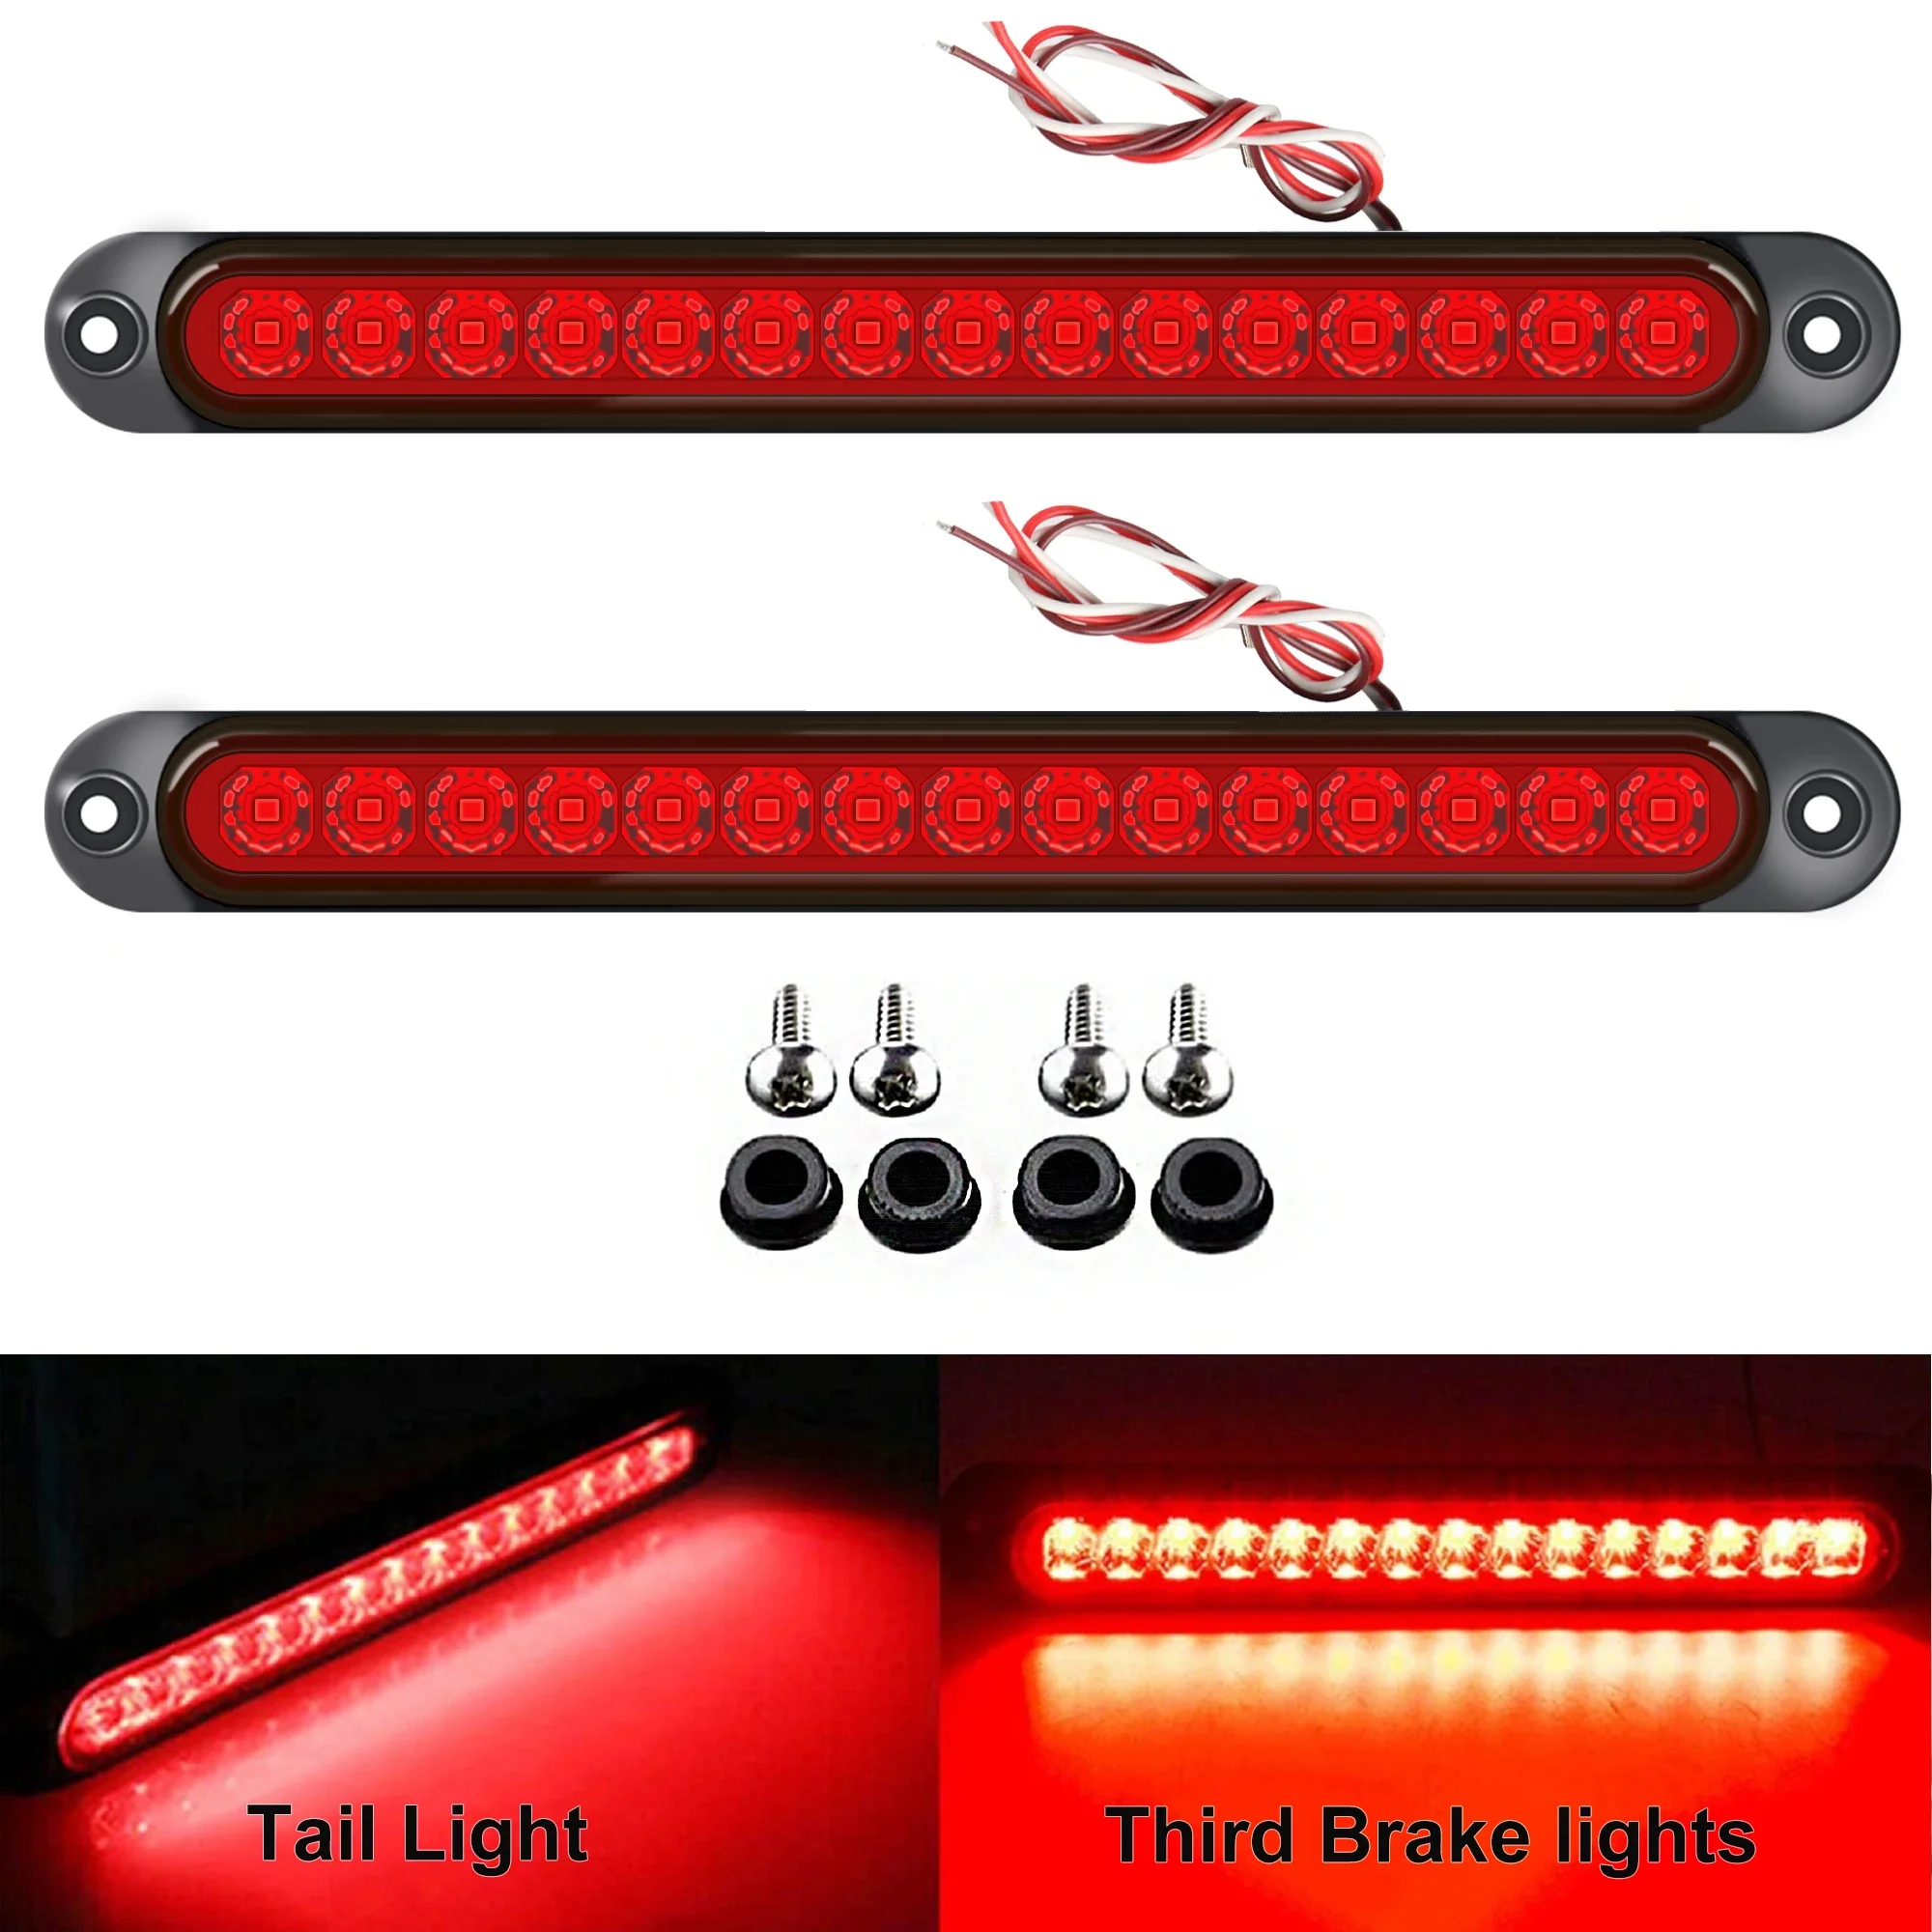 2ks univerzální LED zadek zadní lampa pro přívěs kamion kamion podávacího - brake/stop/turn světel 12V-24V 15 led diody  lehký pult svléknout se